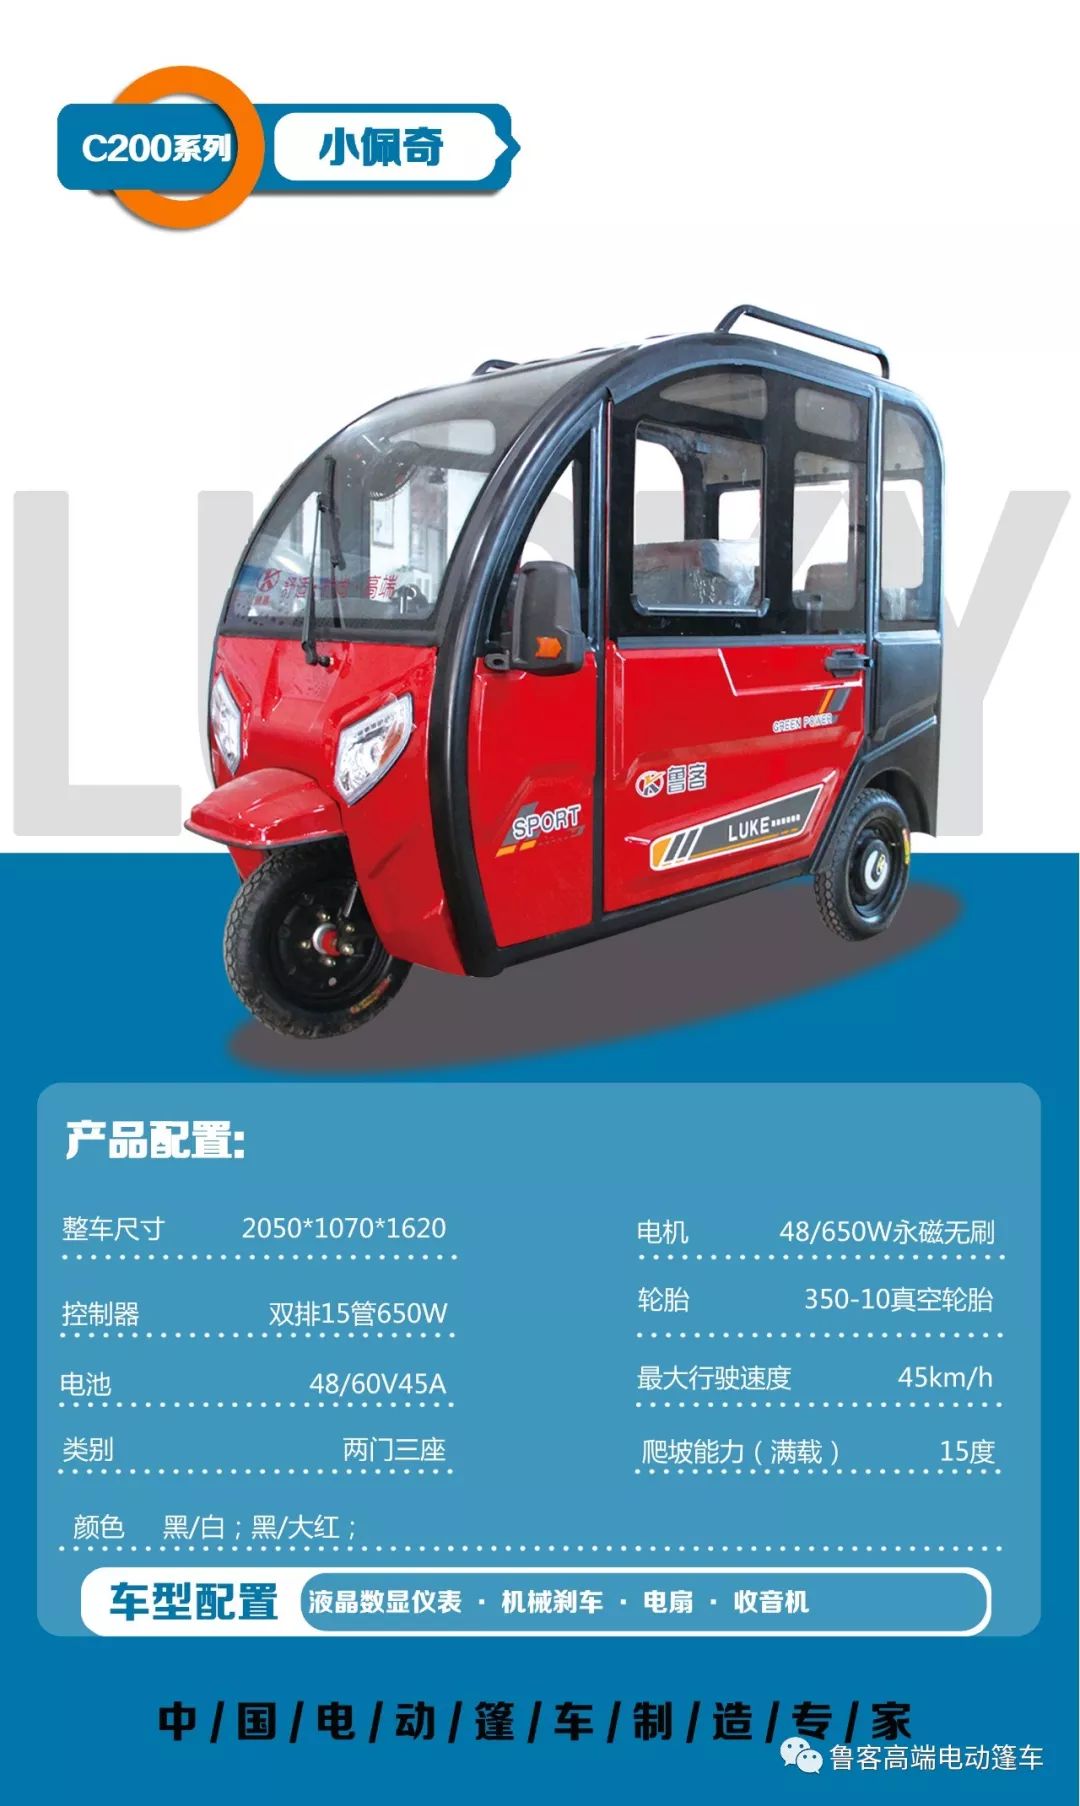 中国电动篷车制造专家鲁客篷车全系列产品介绍